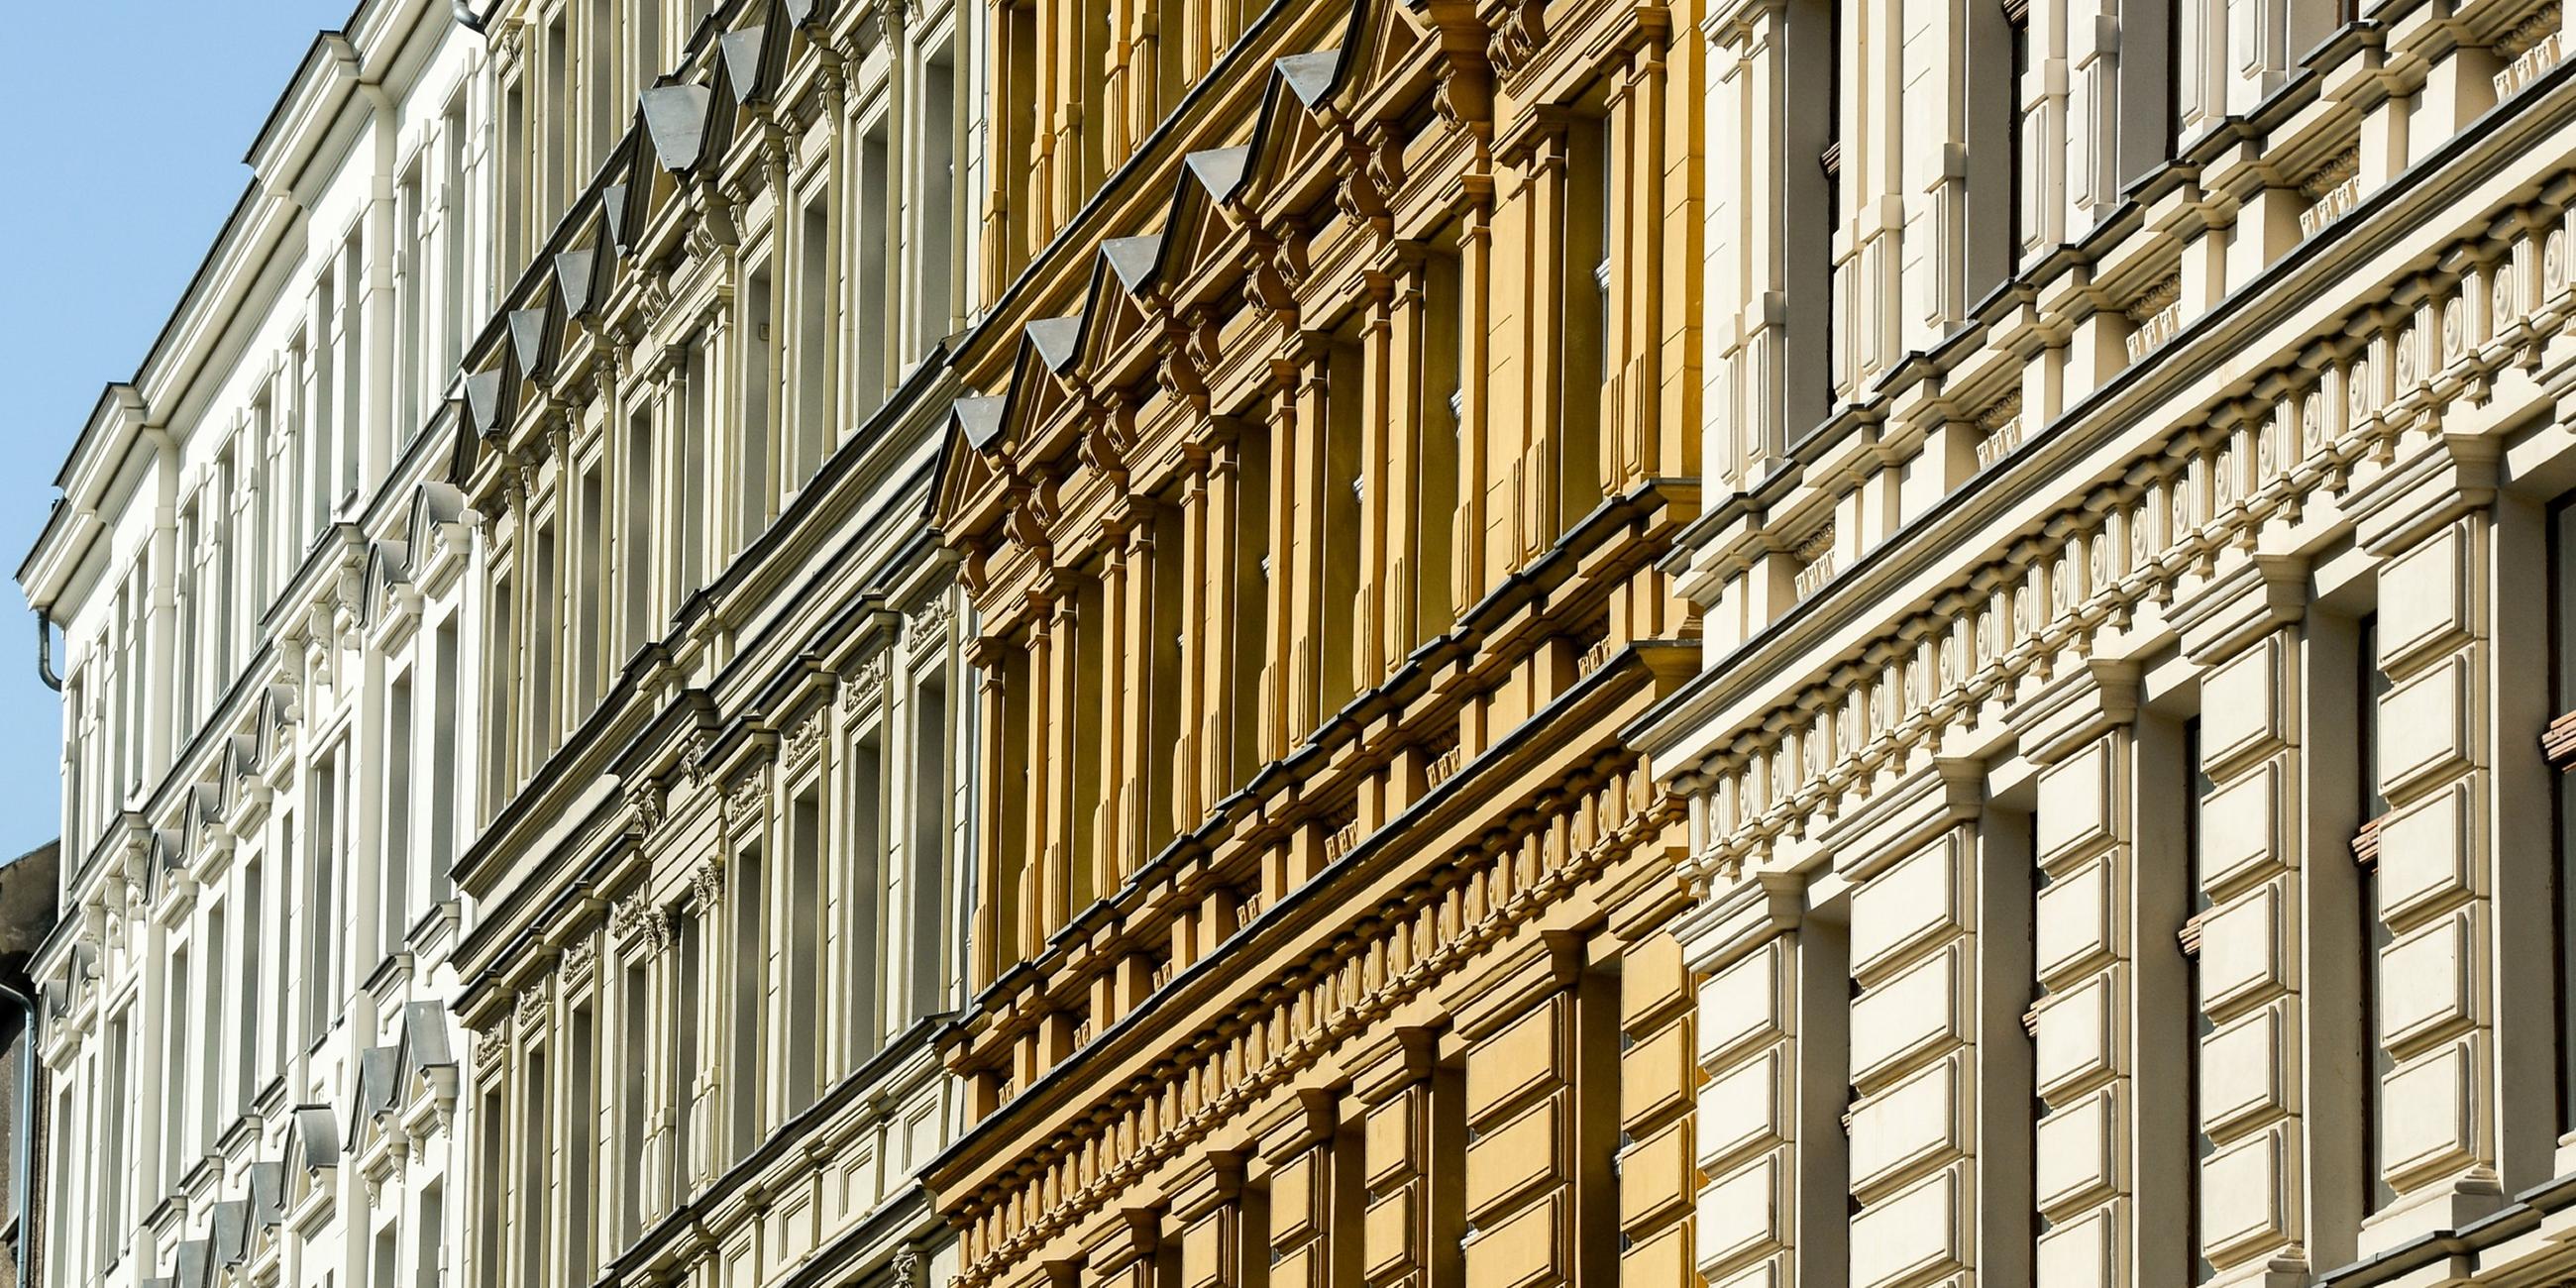  Blick auf die sanierten Fassaden von Wohnhäusern in der Diedenhofer Straße am 18.09.2018.